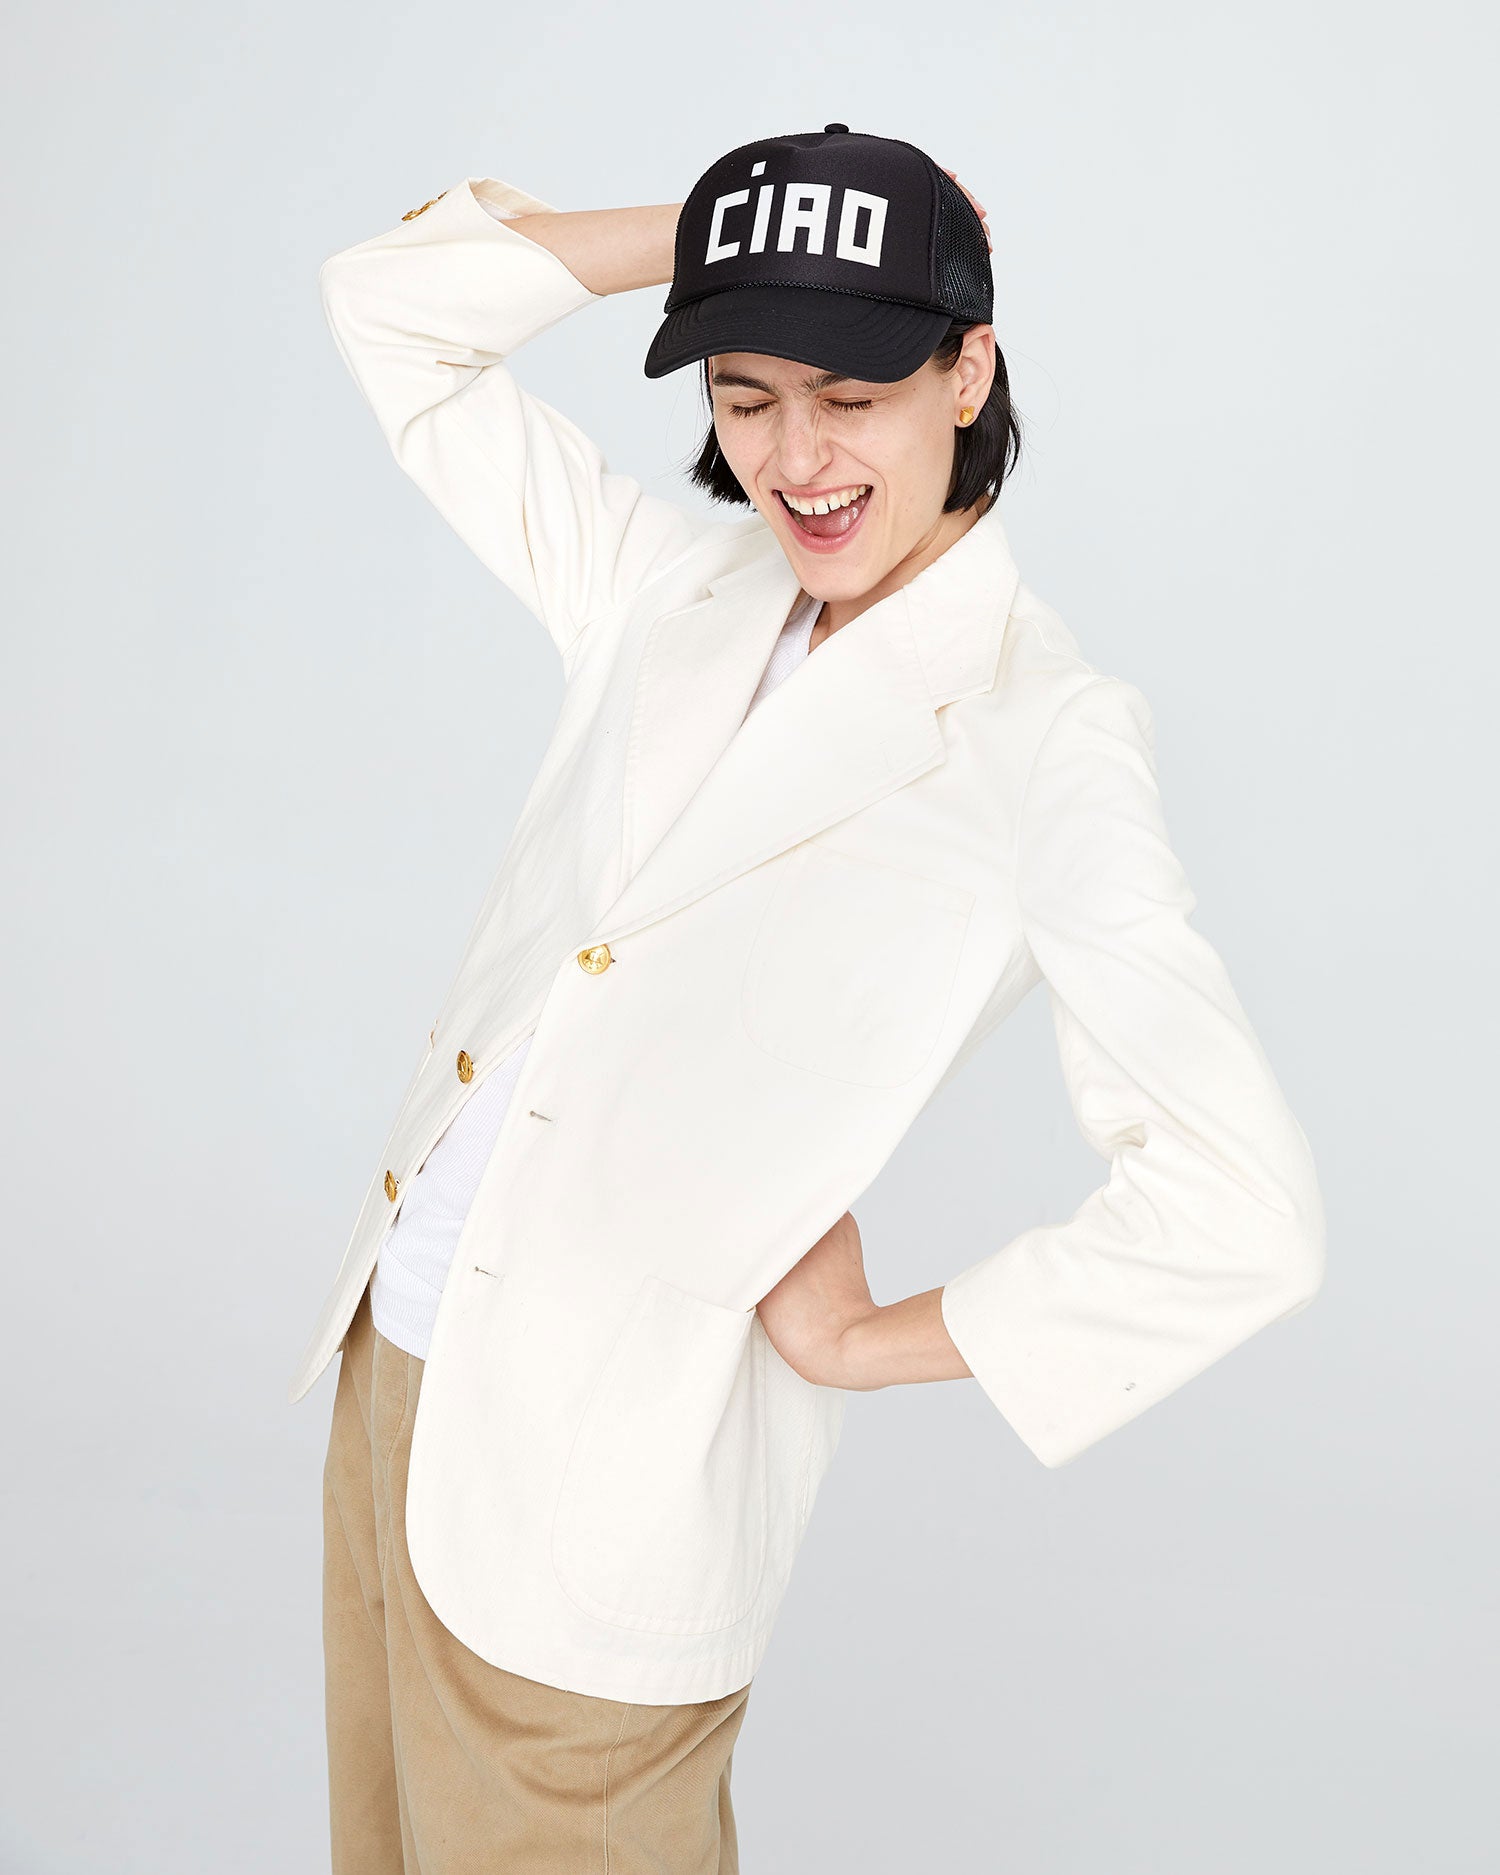 Clare V. Ciao Trucker Hat O/S / Black with Cream